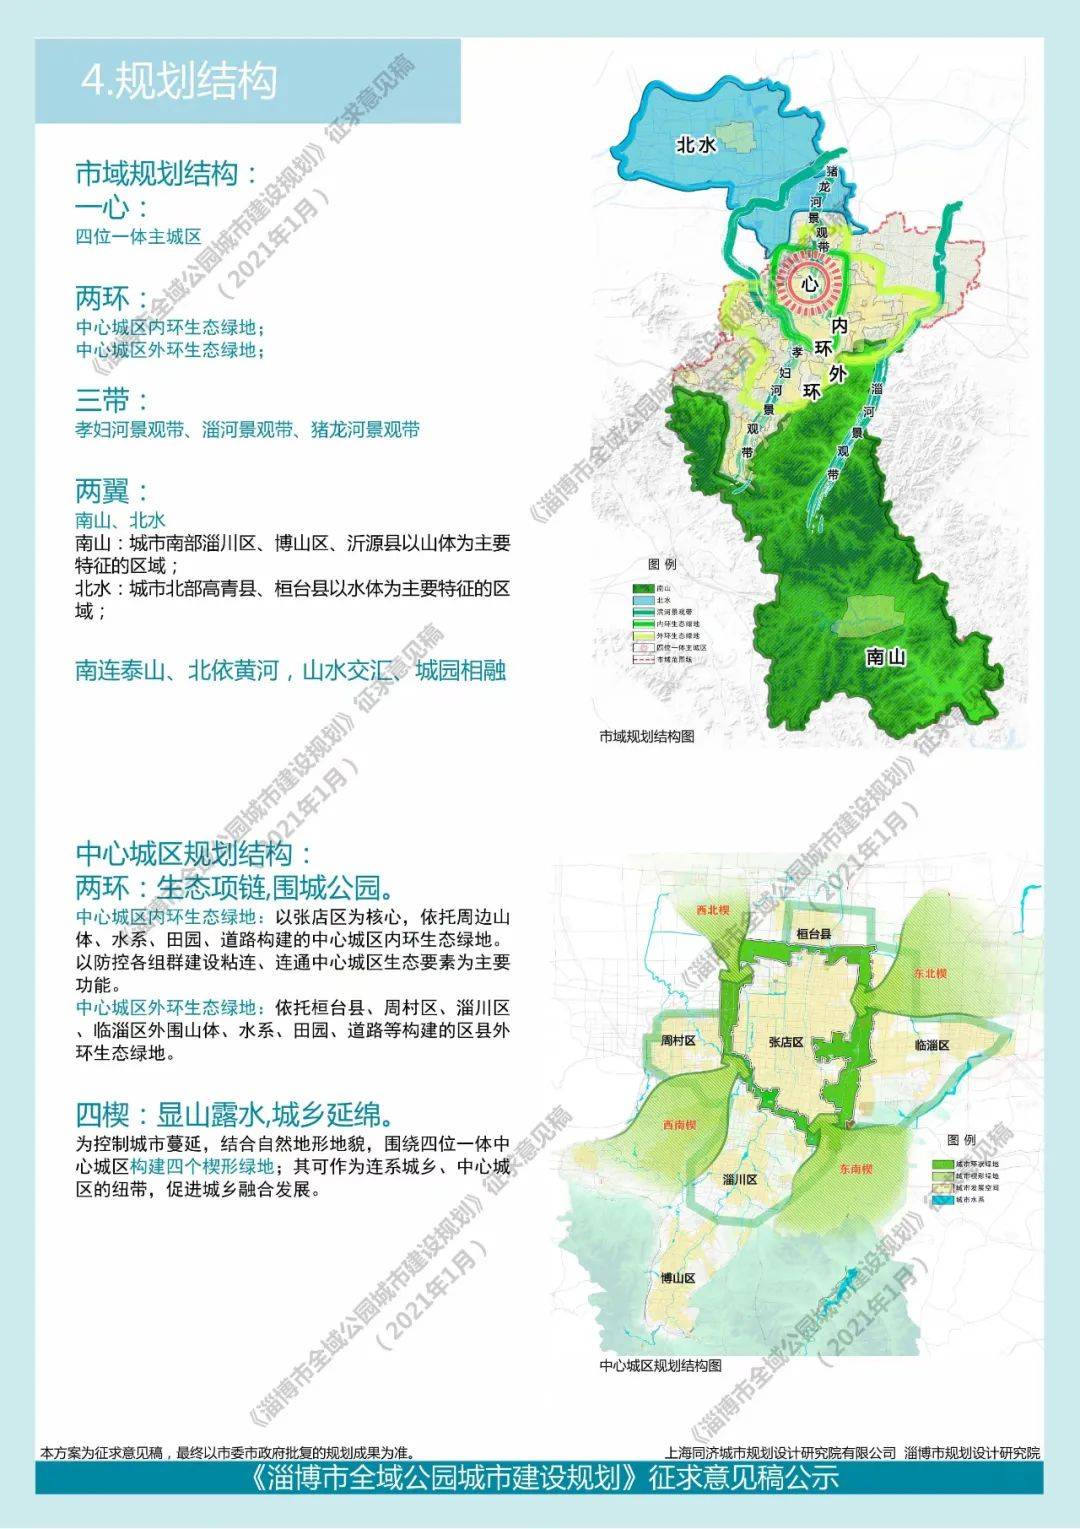 1,网上公示:地址为淄博市自然资源和规划局网站(http://gtj.zibo.